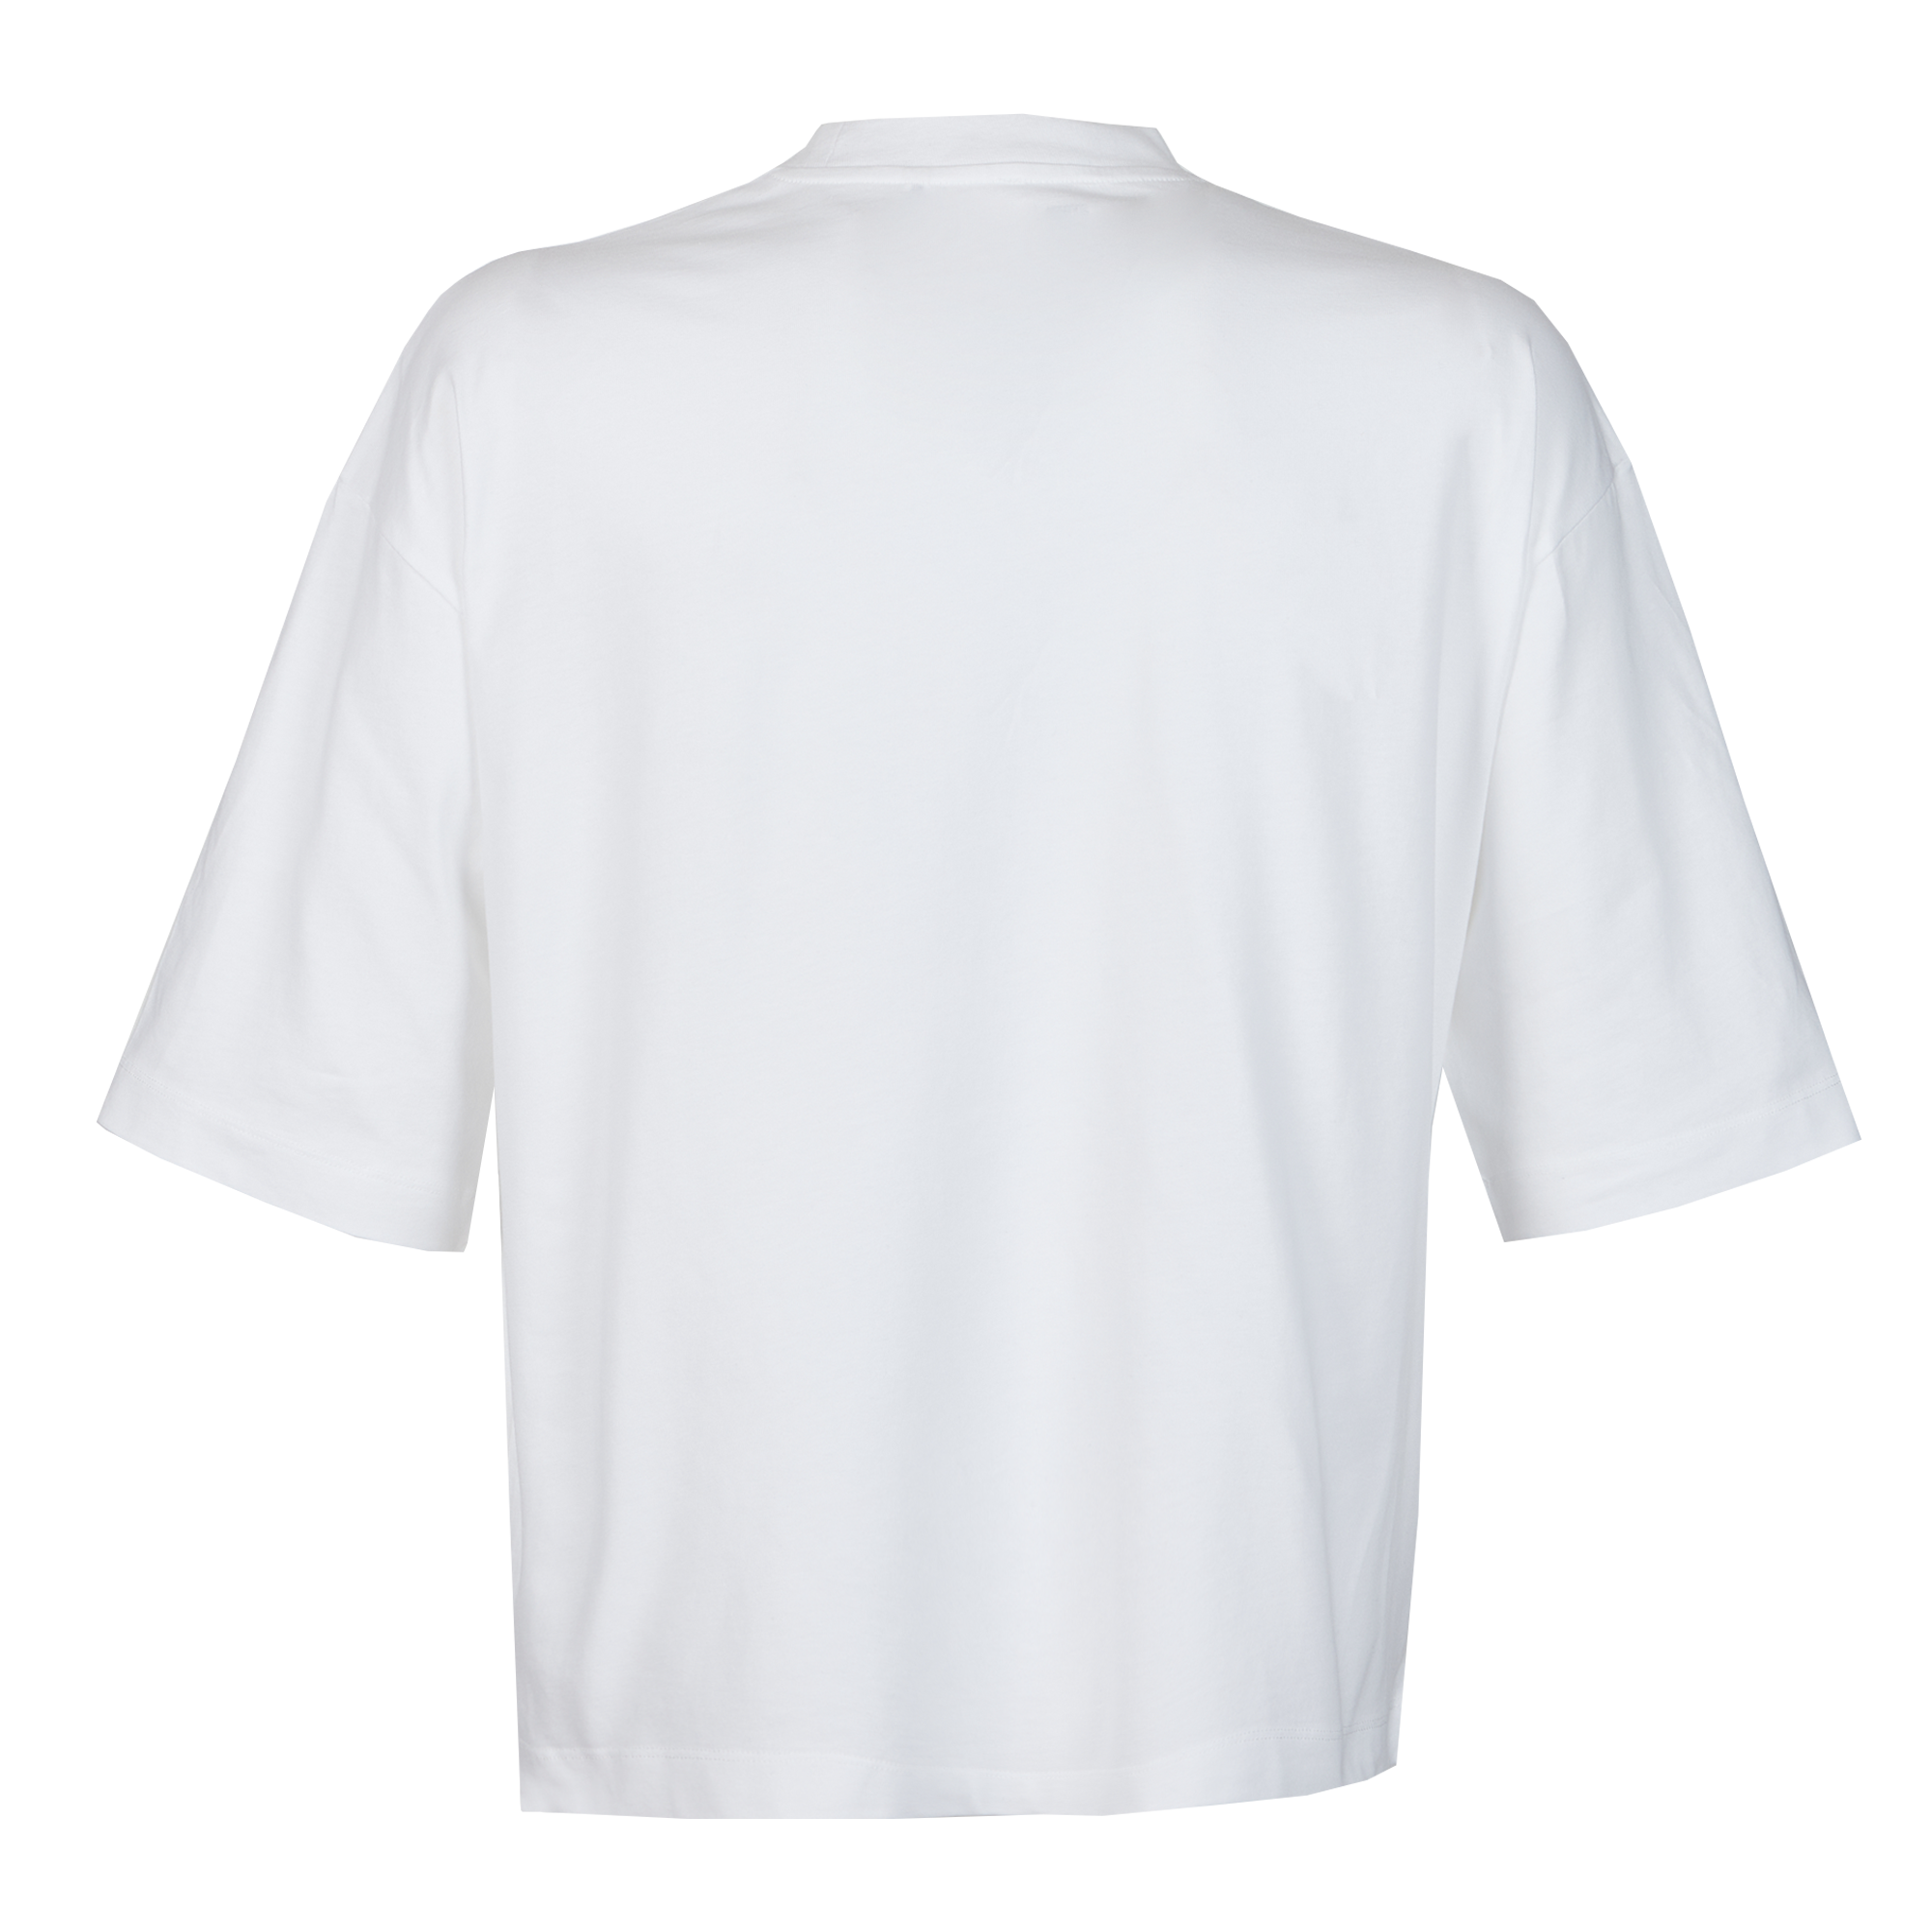 Bora Bora Loose T-Shirt - Be Bold - White